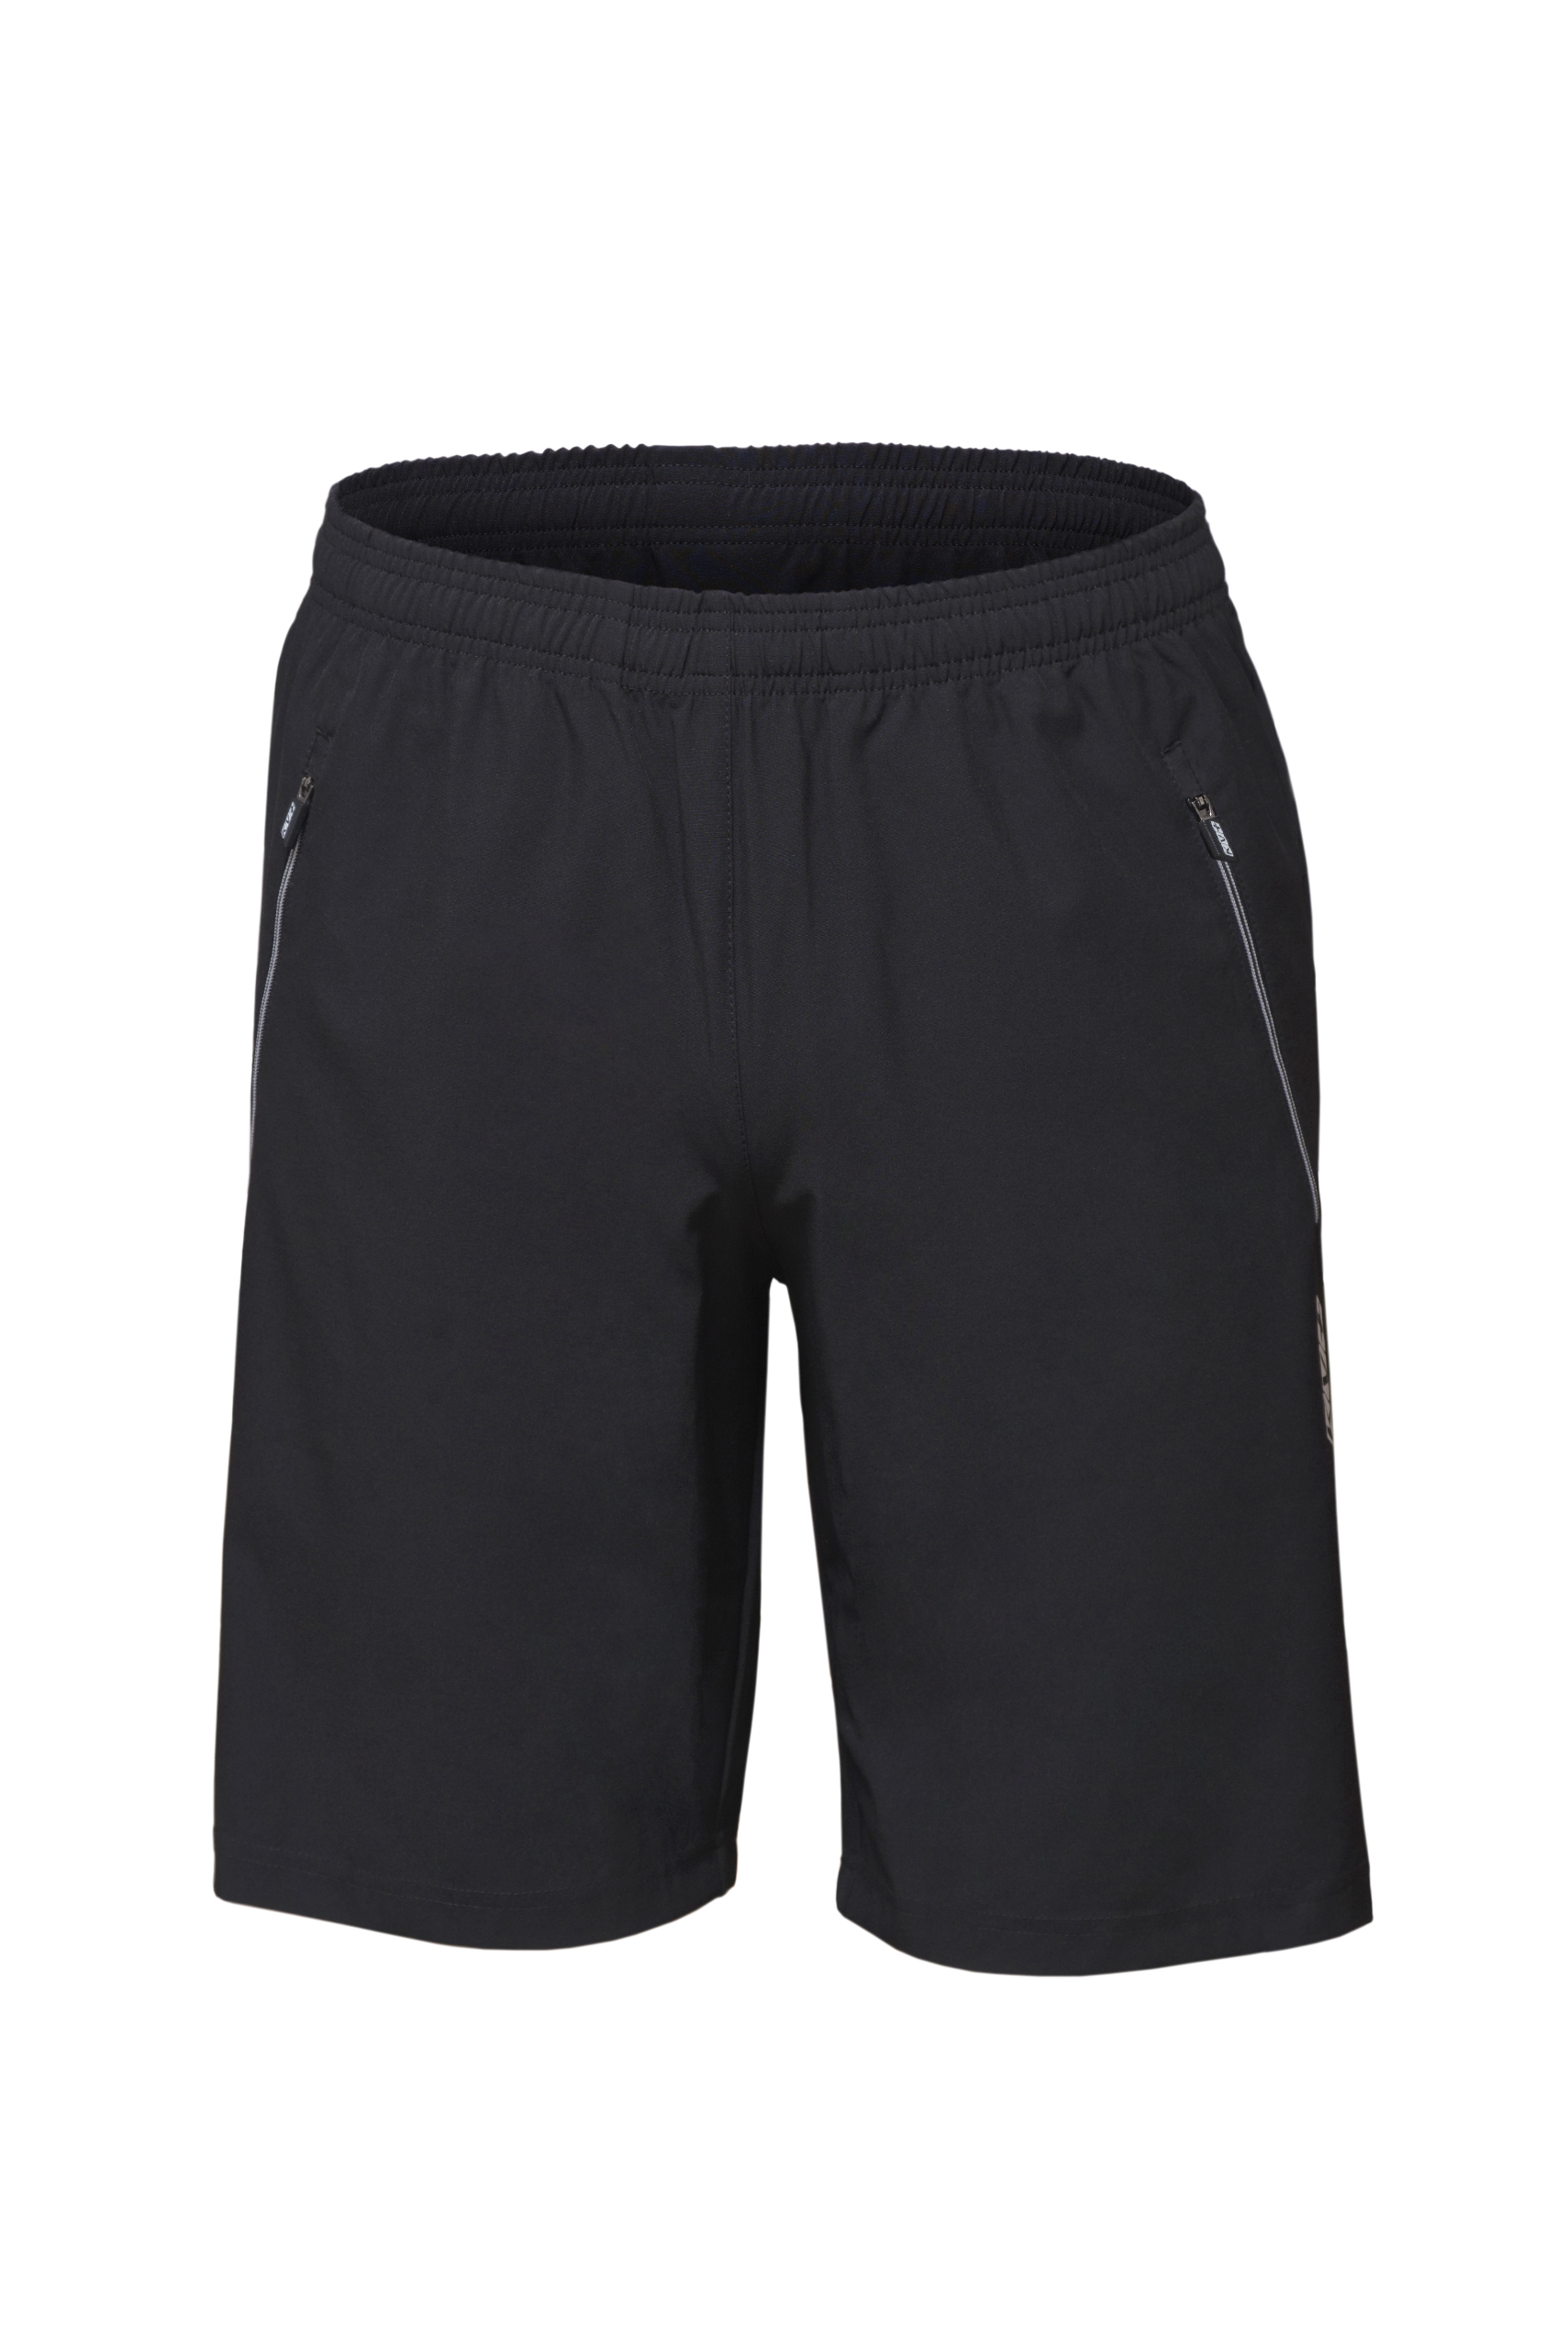 Спортивные шорты мужские KV+ SPRINT shorts черные 3XL